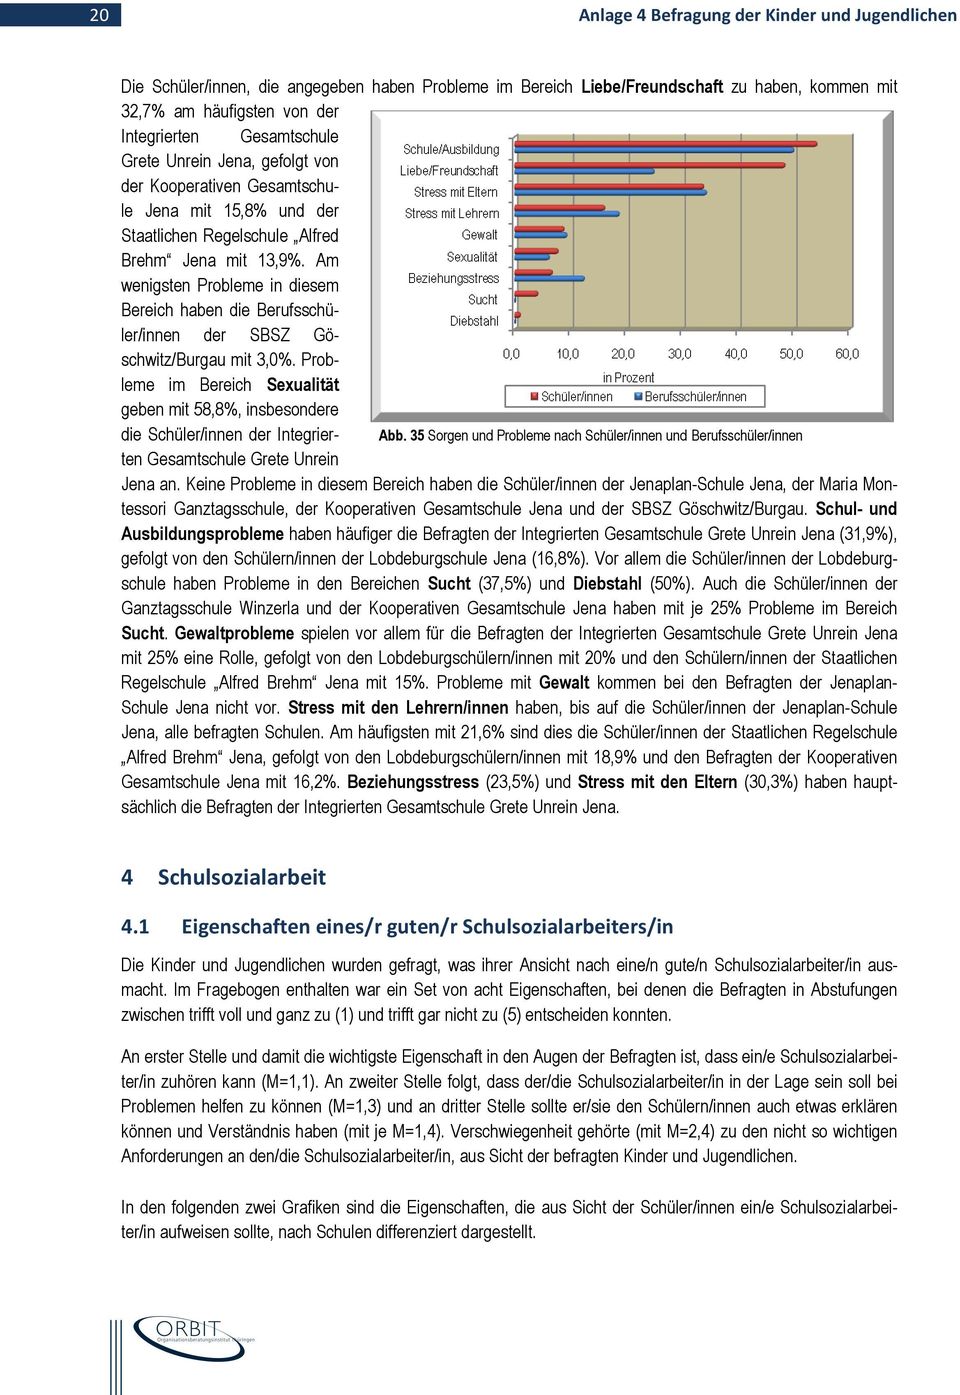 Am wenigsten Probleme in diesem Bereich haben die Berufsschüler/innen der SBSZ Göschwitz/Burgau mit 3,0%.